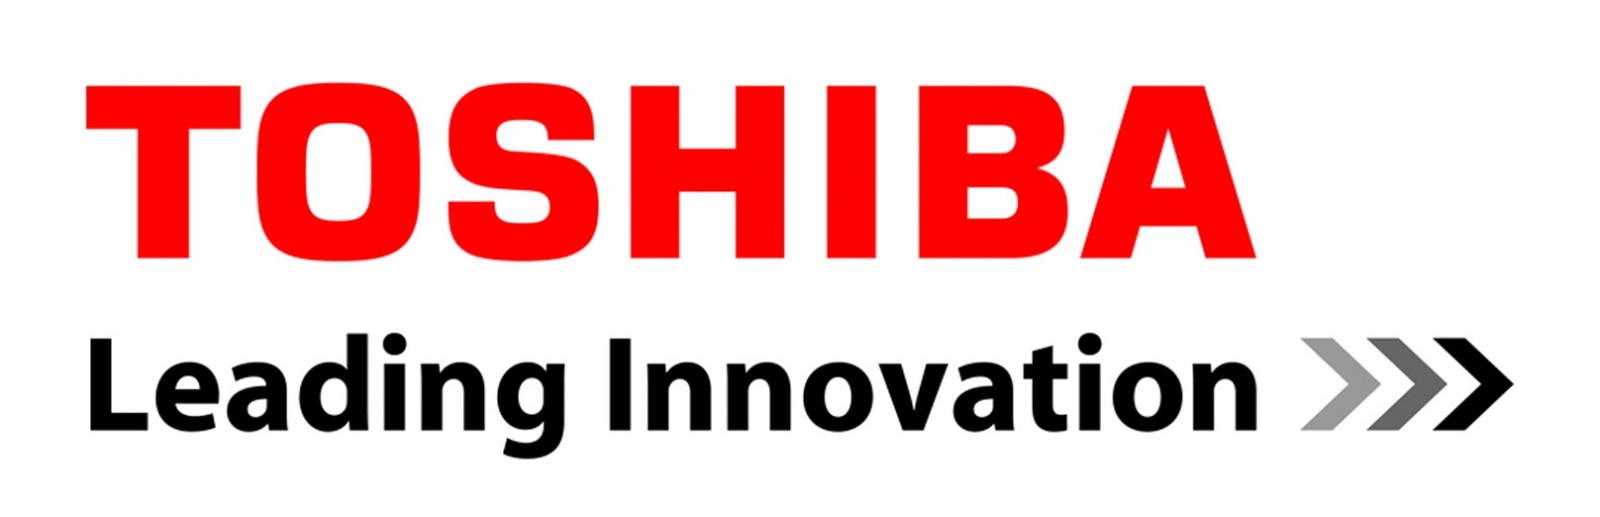 Купить ноутбуки tishibo, тошибо - лидер в инновациях